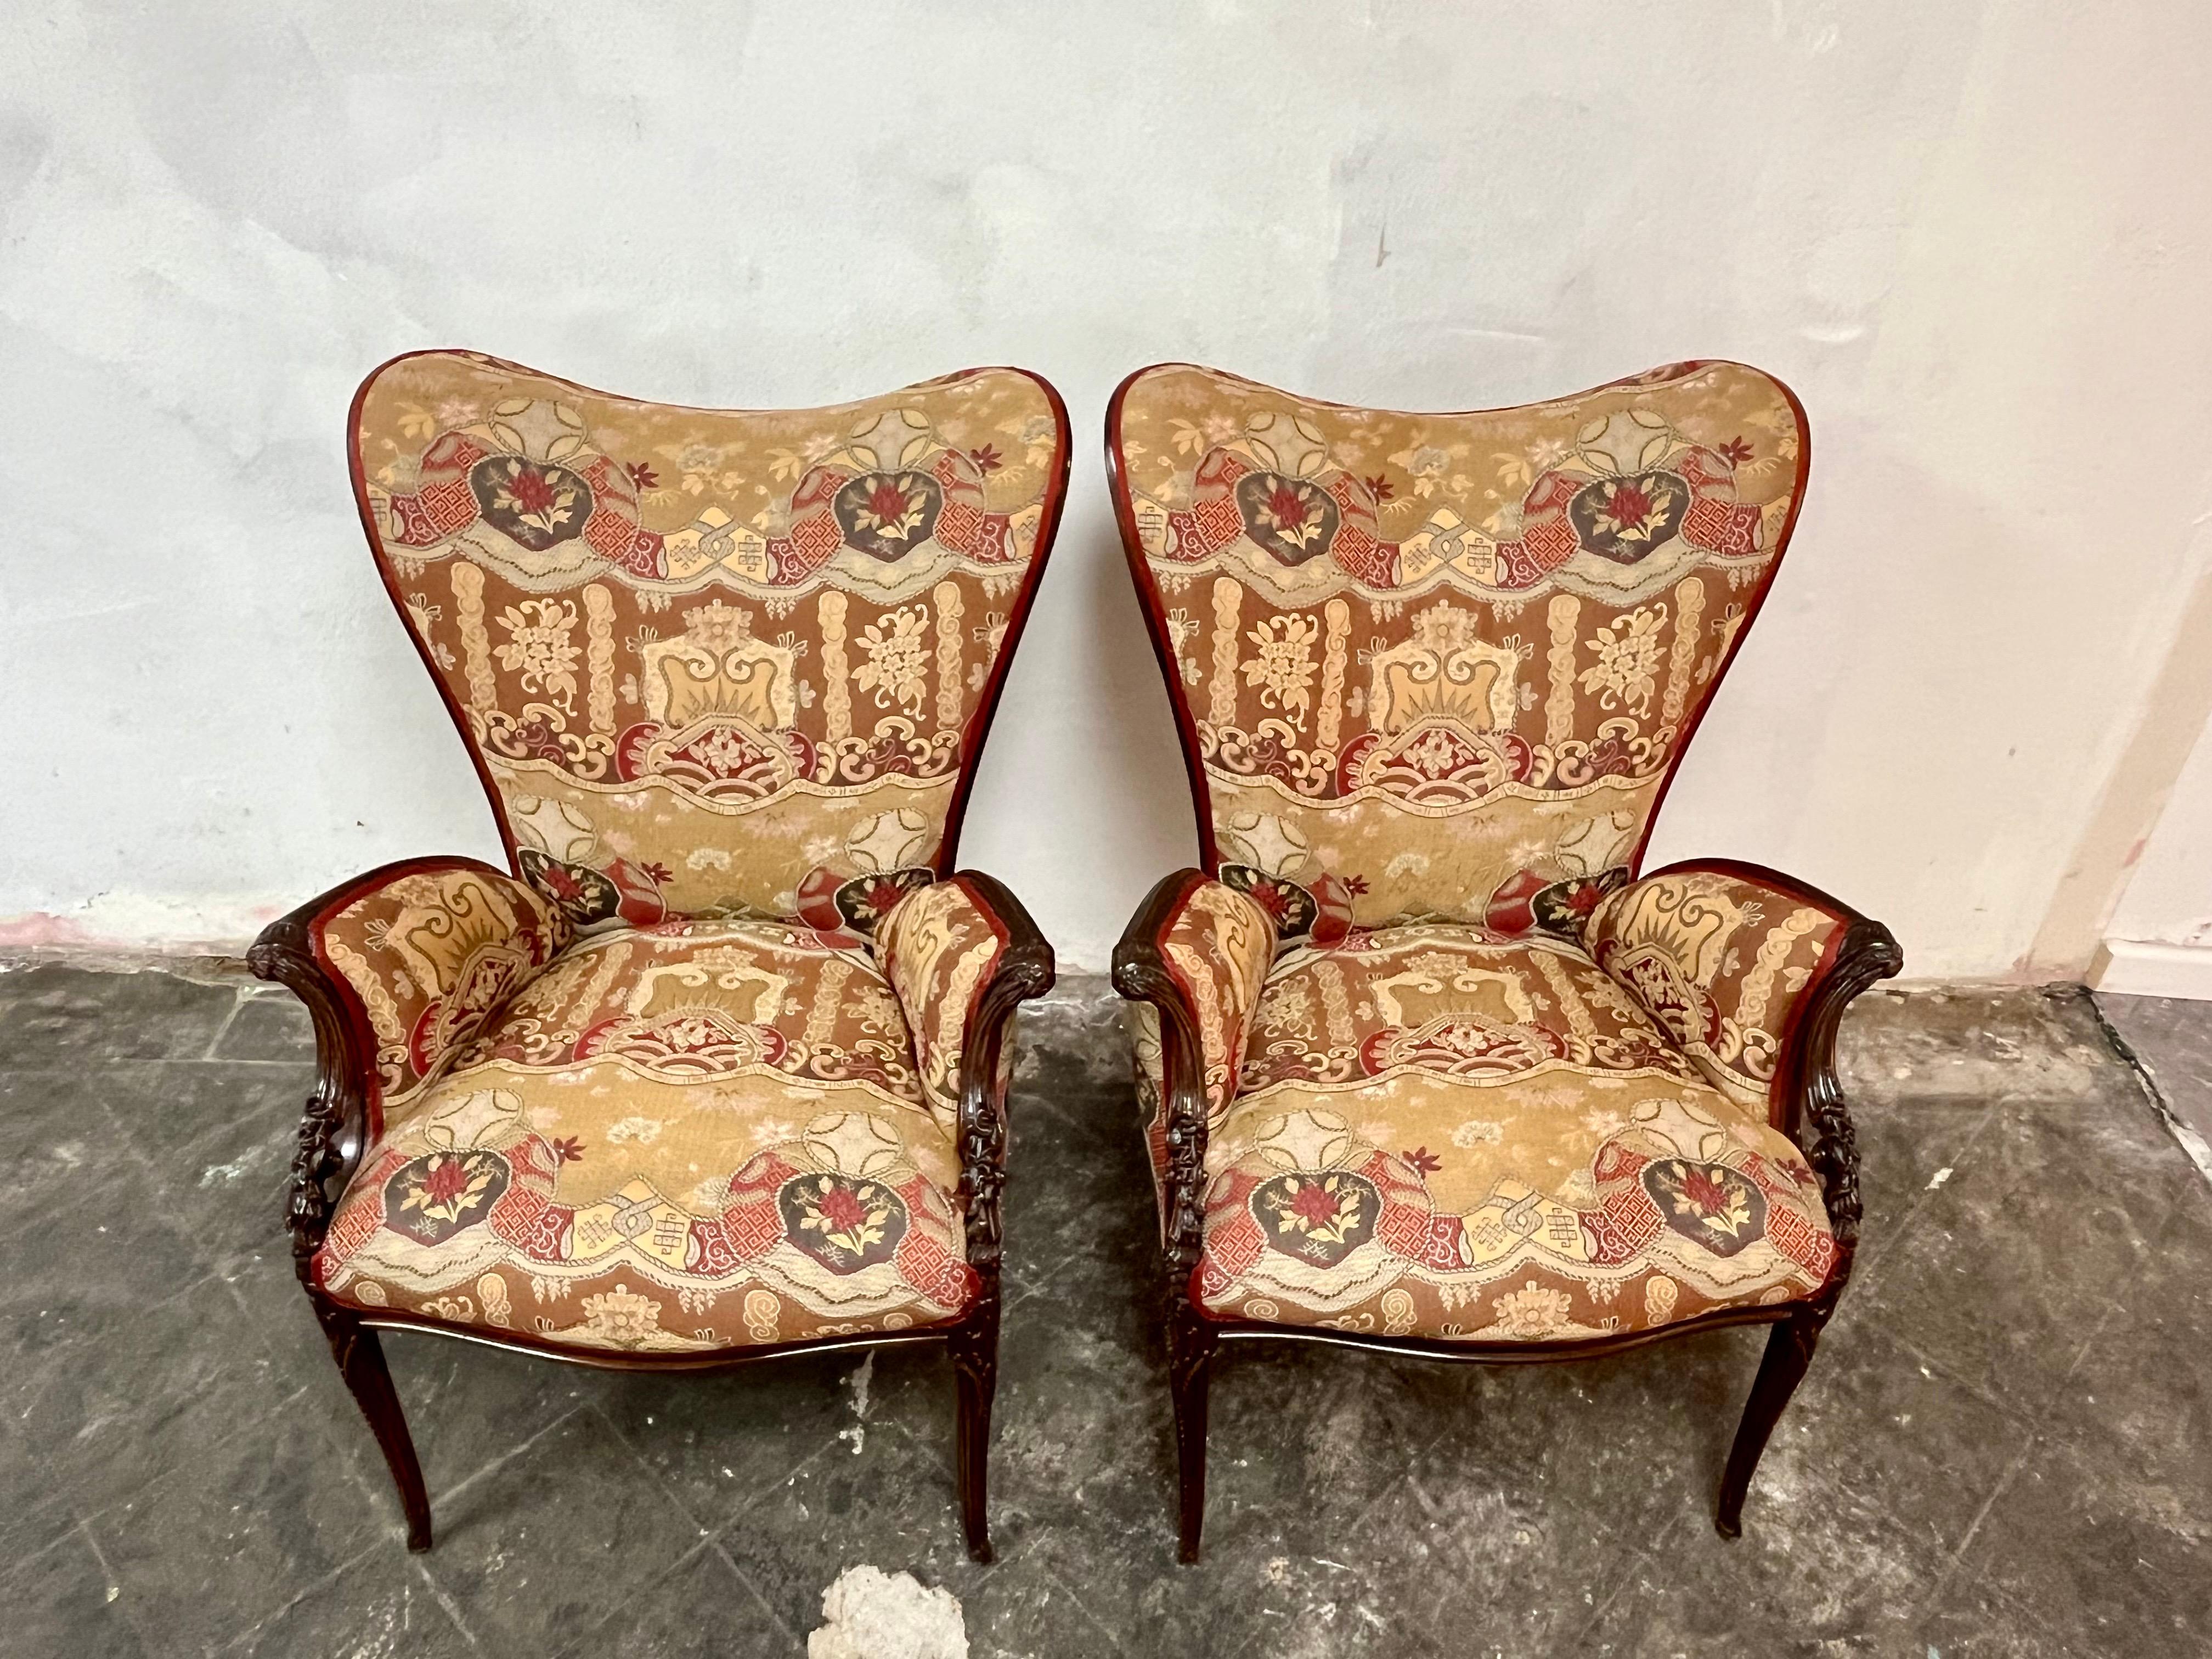 Atemberaubende Paar Grosfeld Haus zugeschrieben gut geschnitzt Mahagoni Sessel. Wir lieben die wunderschöne herzförmige Rückenlehne mit den ausladenden, verschnörkelten Armen - sehr stilvoll. Wunderschöne Polsterung in gutem Zustand. 
Bordsteinkante